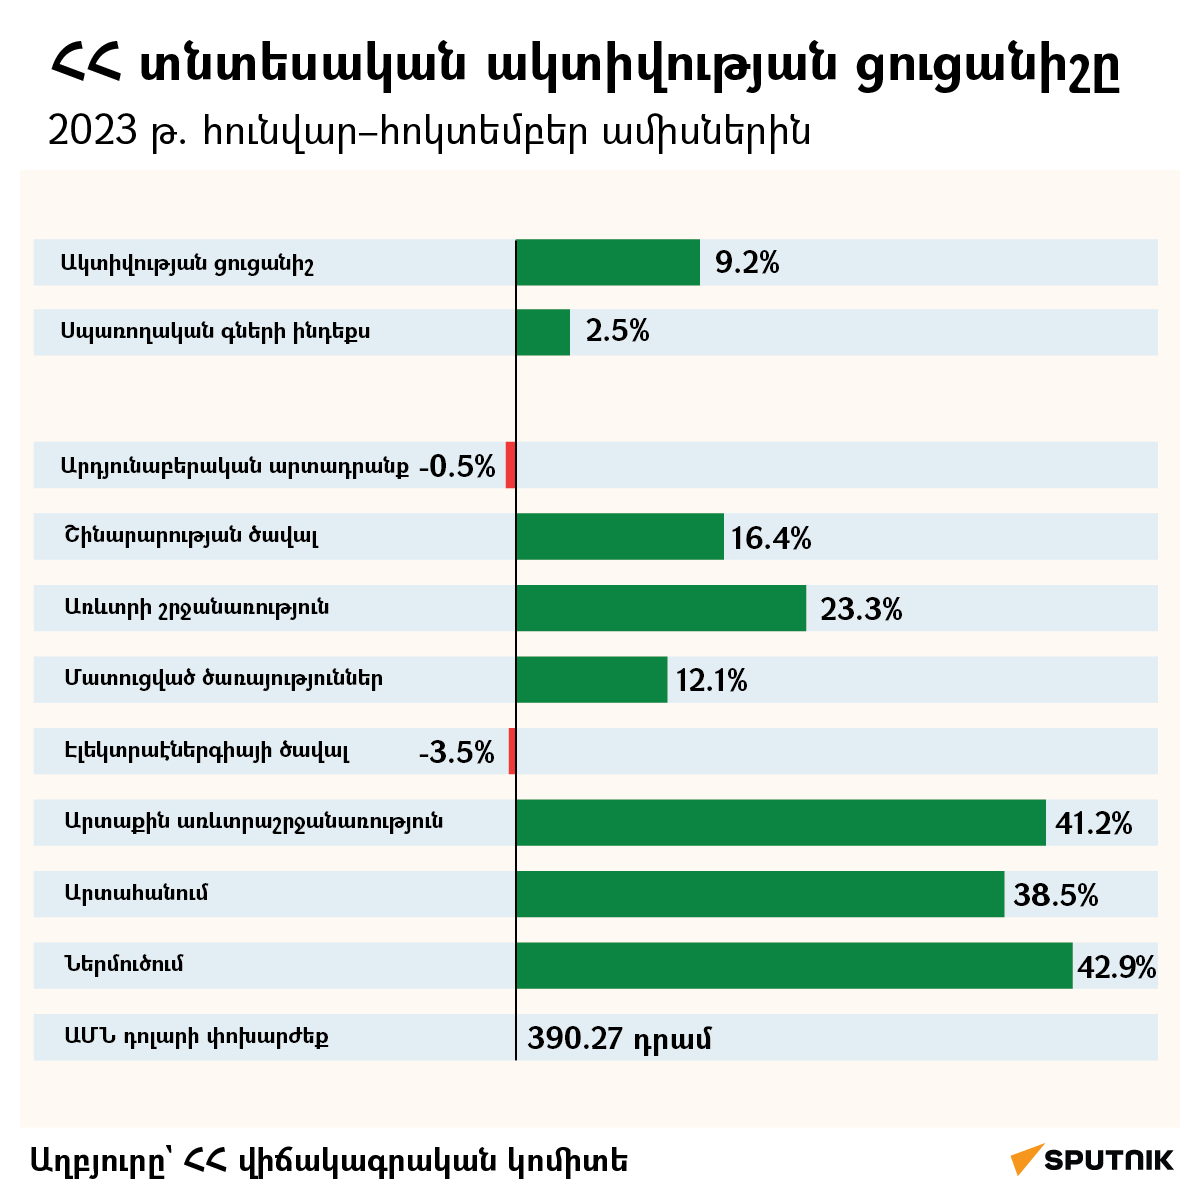 ՀՀ տնտեսական ակտիվության ցուցանիշը 2023 թ. - Sputnik Արմենիա